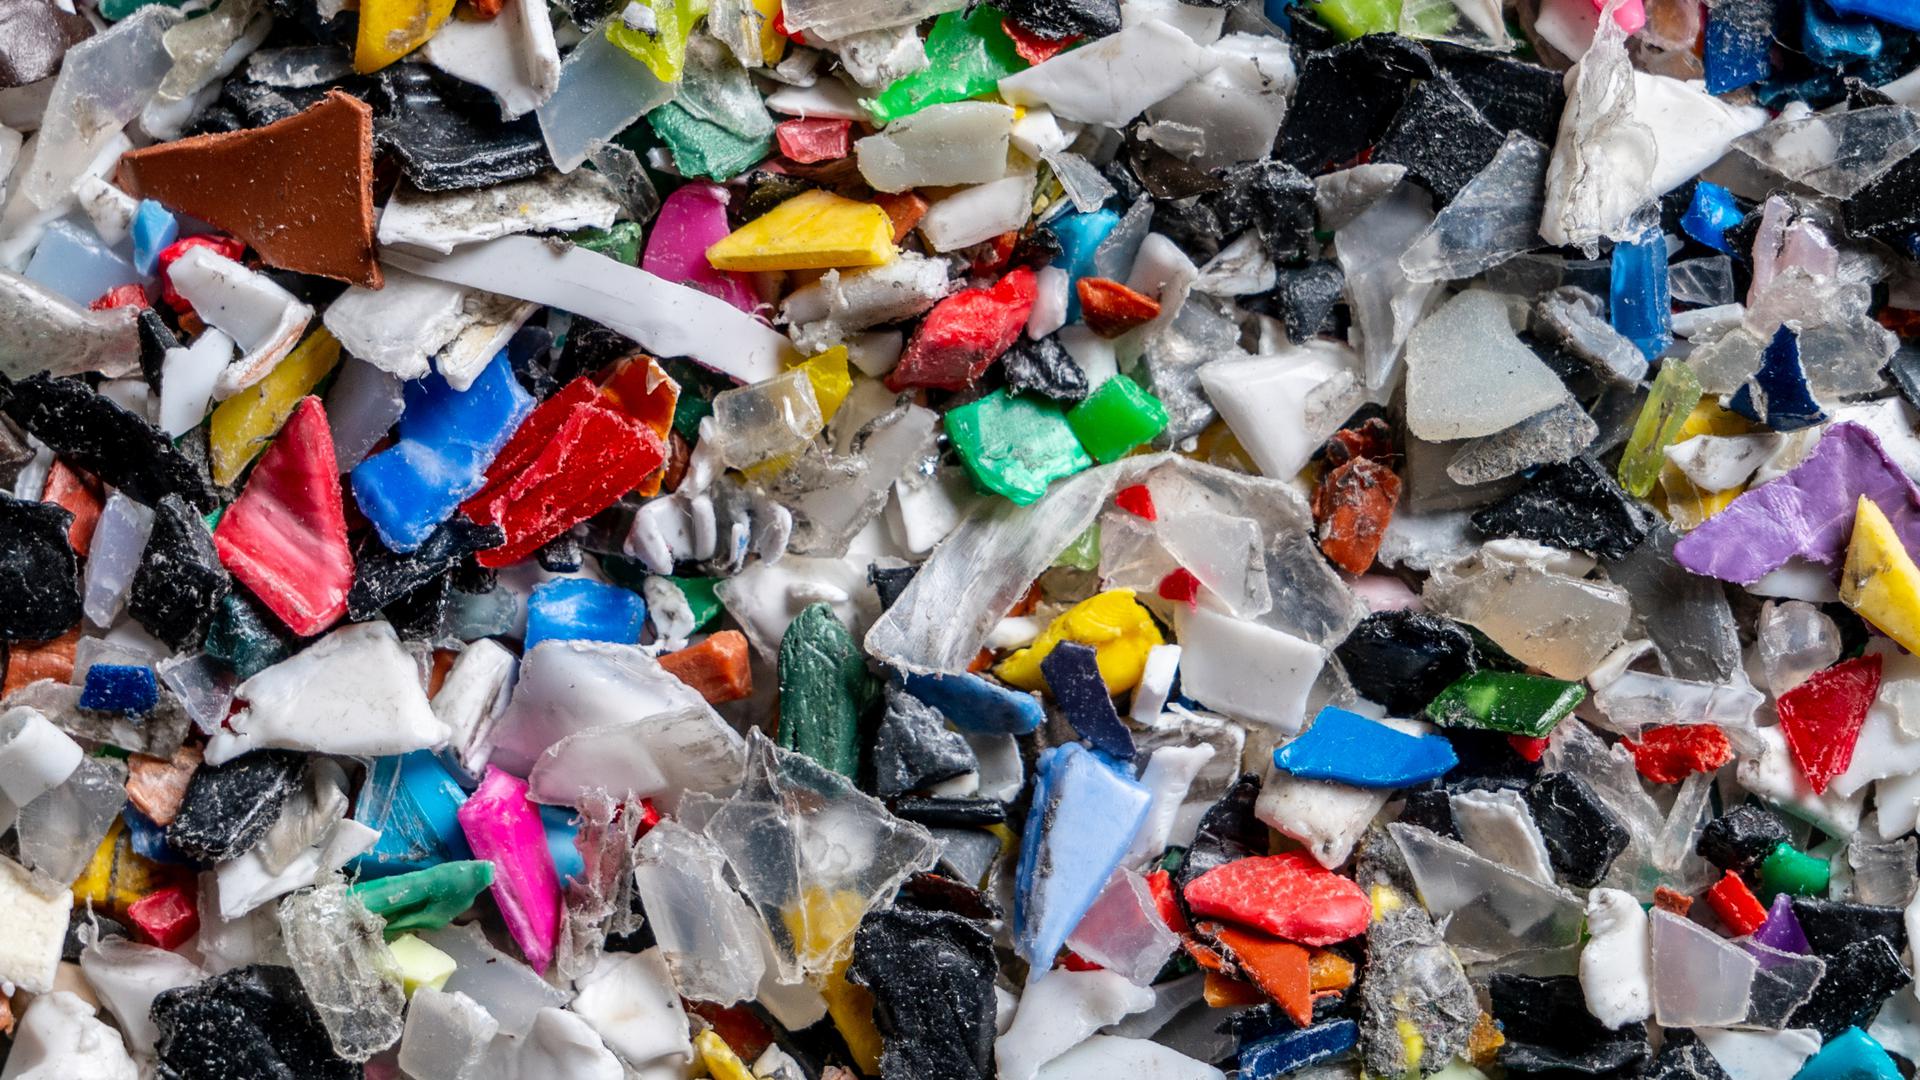 Bunter Haufen: Beim Sortieren solcher Mixturen an geschreddertem Kunststoff stoßen herkömmliche Sortieranlagen an ihre Grenzen. Neue Technik soll das Abschöpfen von Altplastik für hochwertige Recyclingprodukte verbessern.